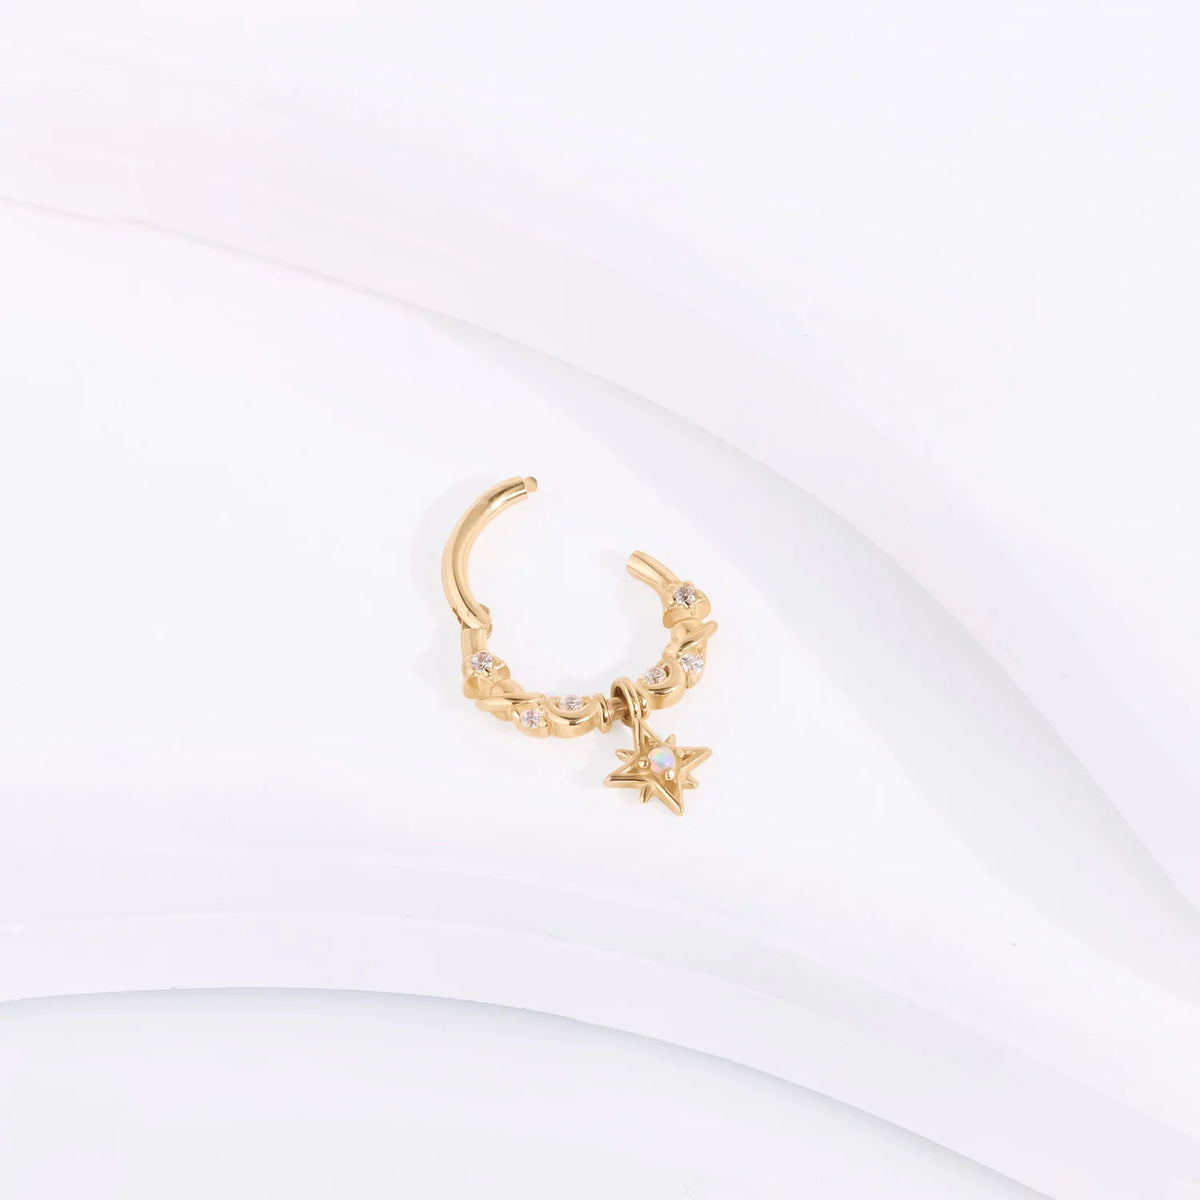 Cerchio in oro 14 carati con pendente opale orecchino pendente segmento clicker anello al naso stile principessa carino e grazioso piercing al setto daith